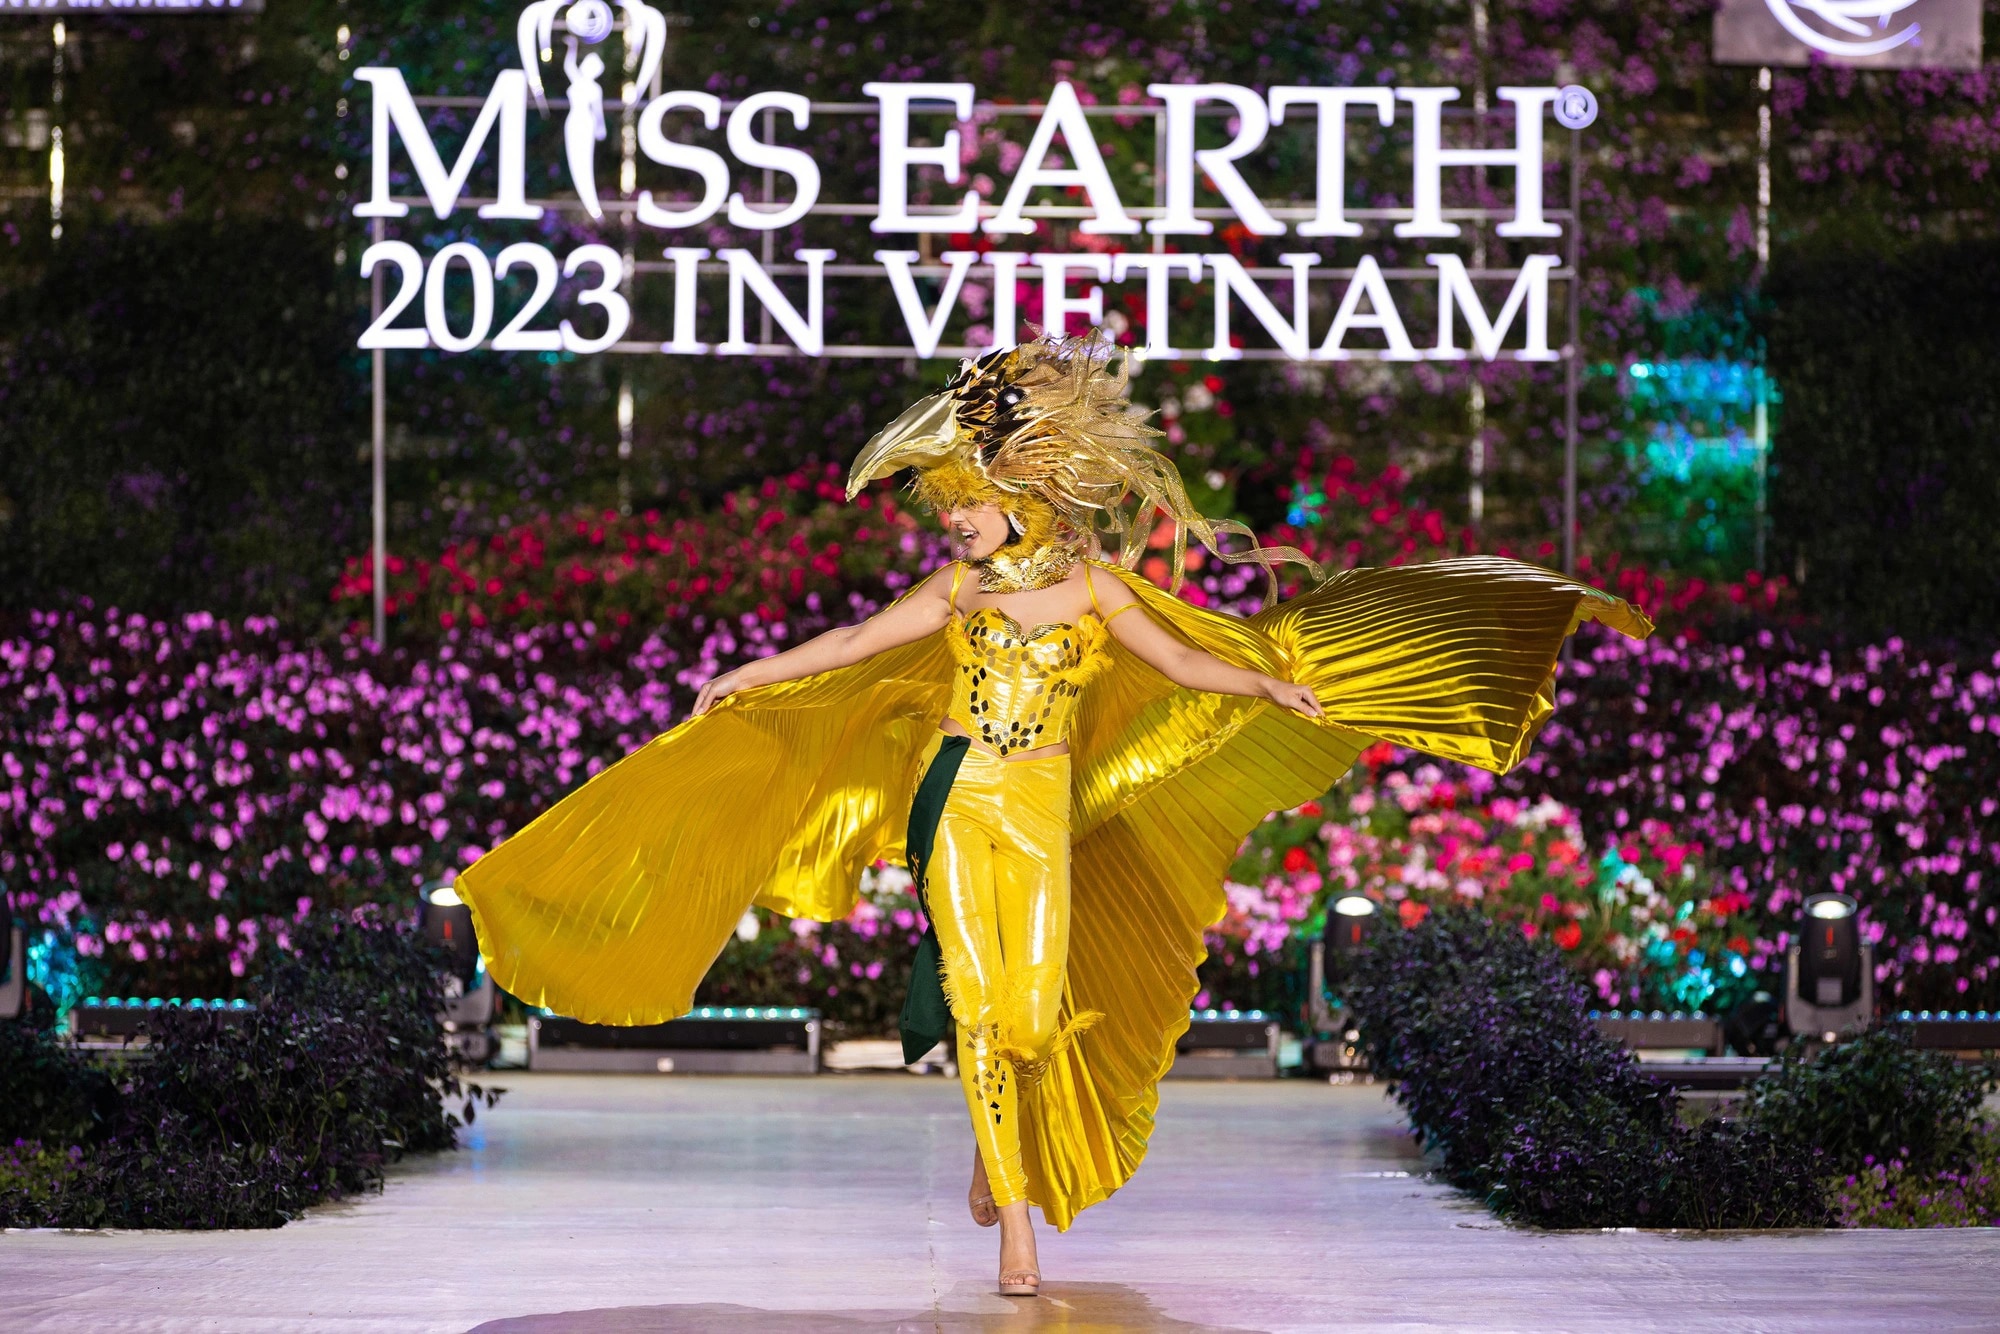 Bán kết Miss Earth 2023 màn trình Trang phục Dân tộc bùng nổ hình ảnh cỏ hoa, muông thú - Ảnh 30.